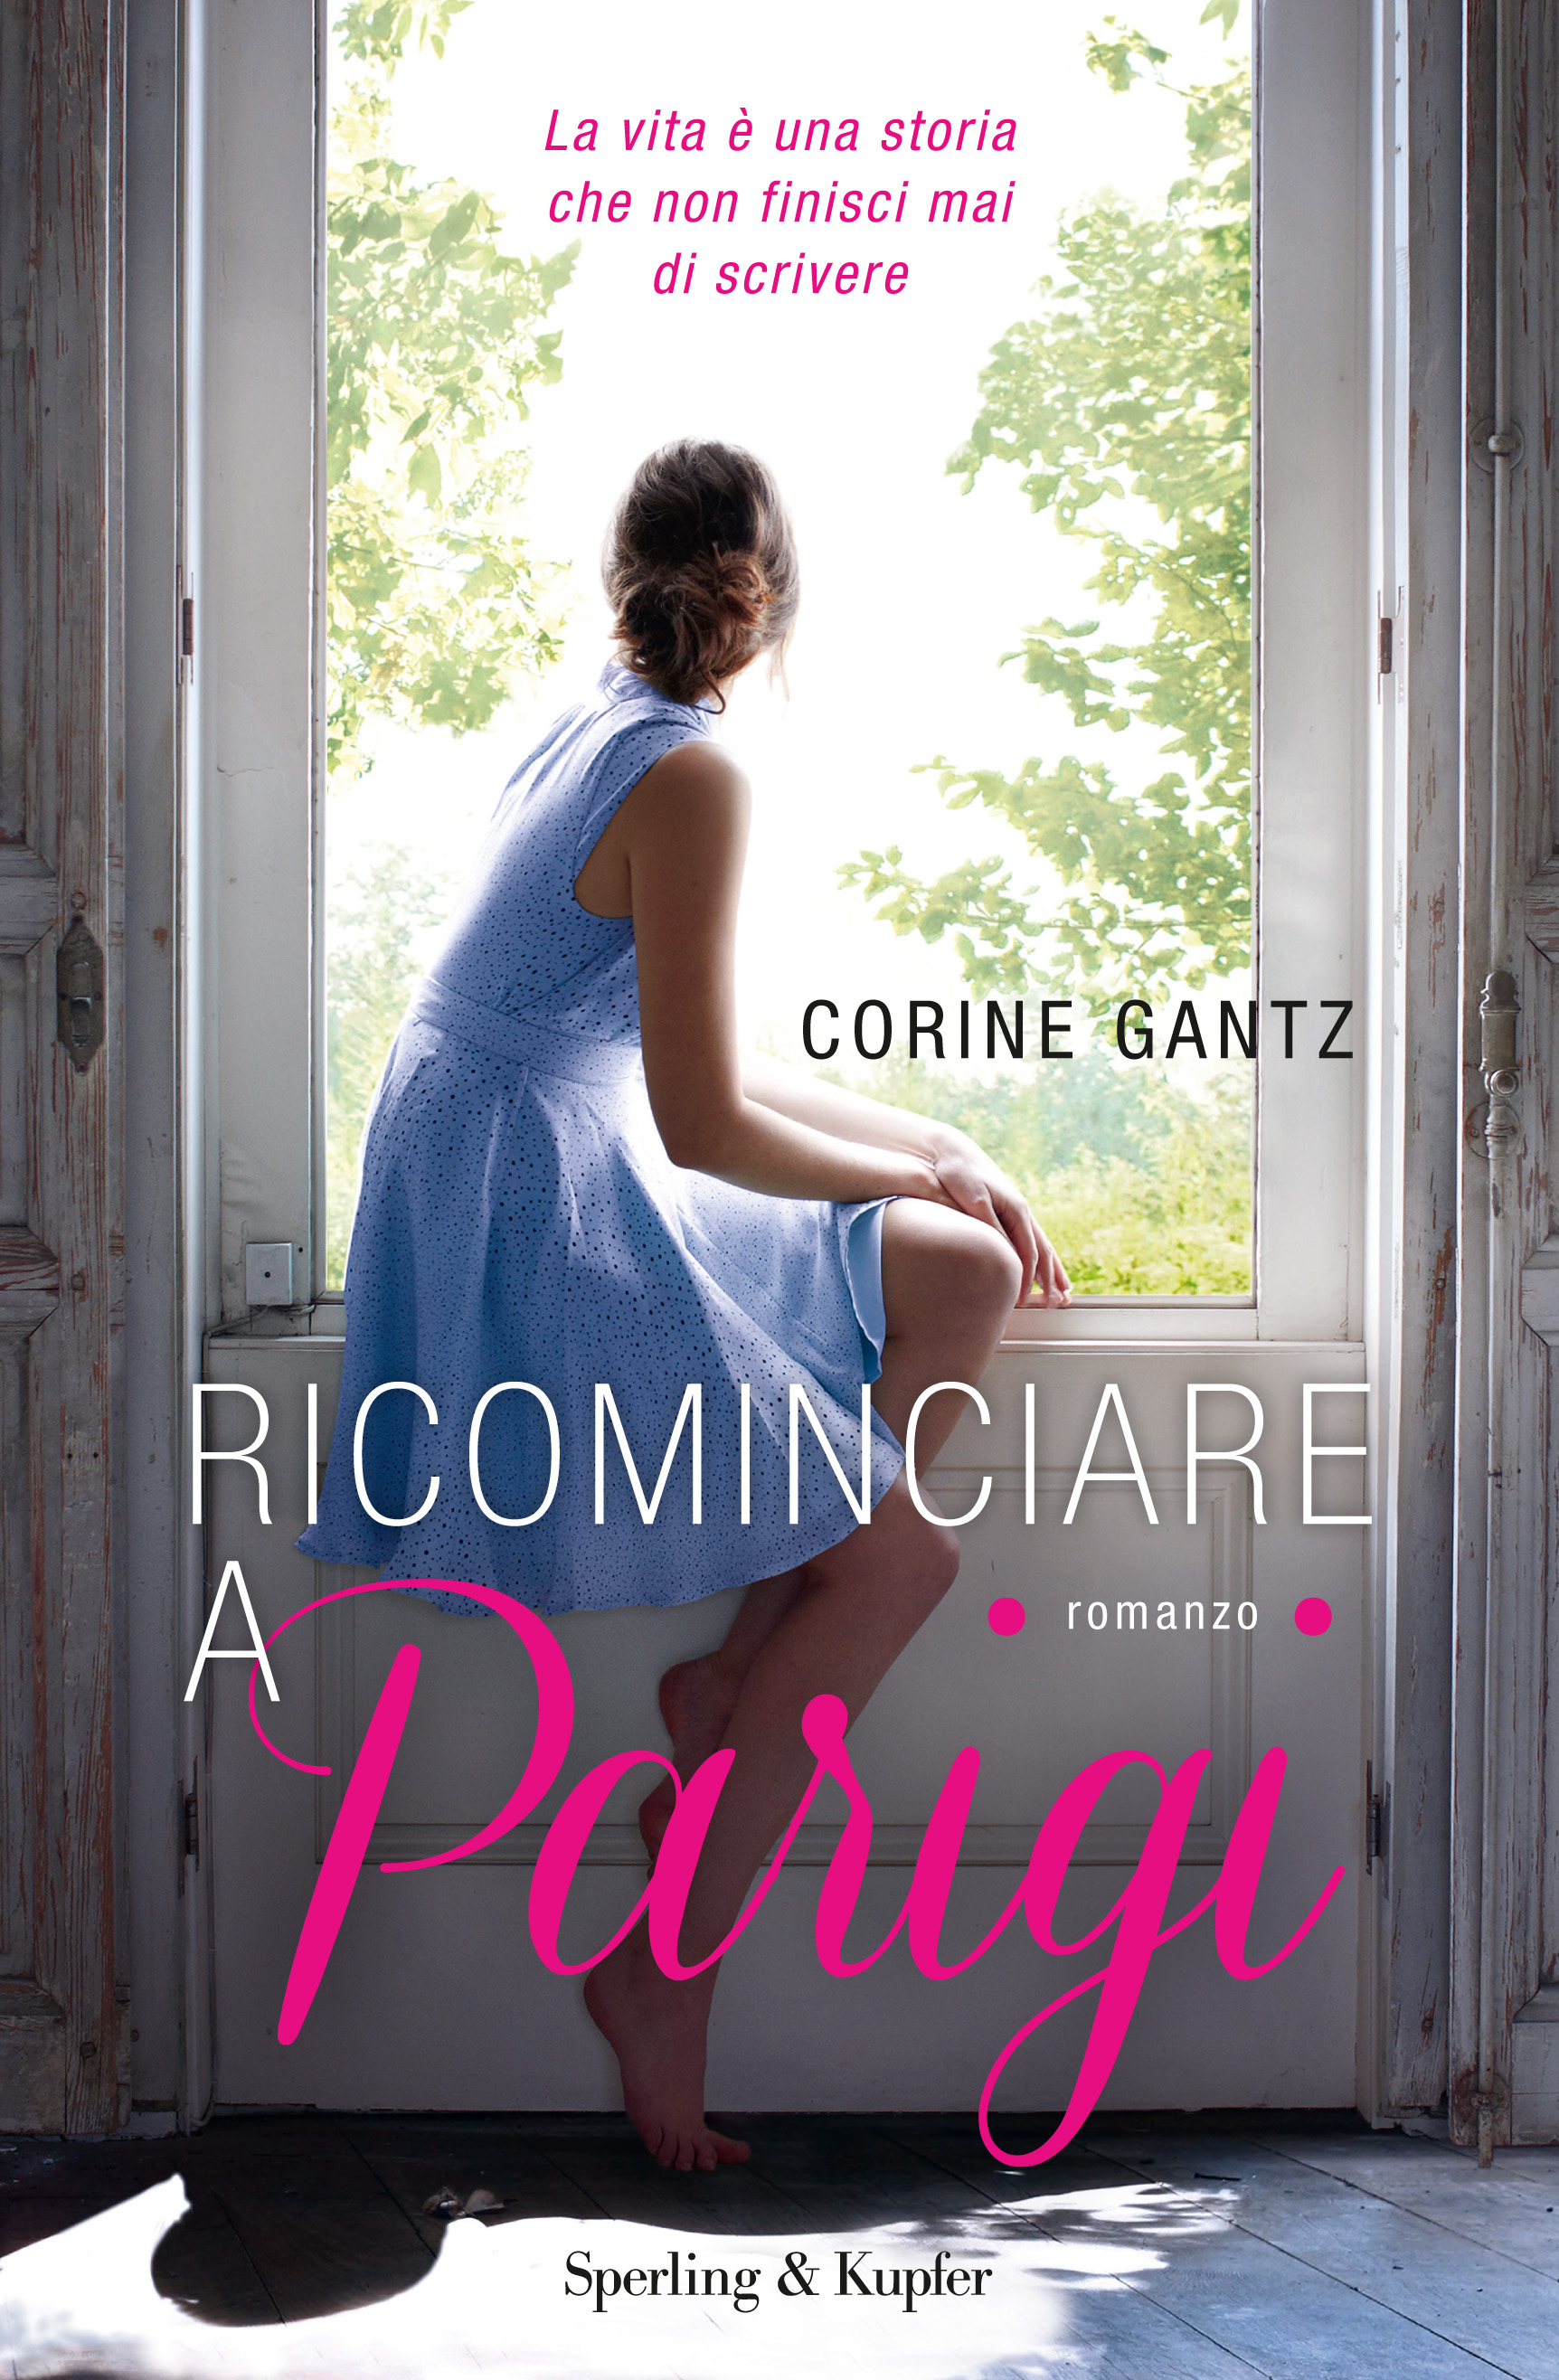 Ricominciare a Parigi: l'Italia e l'italiano con Corine Gantz